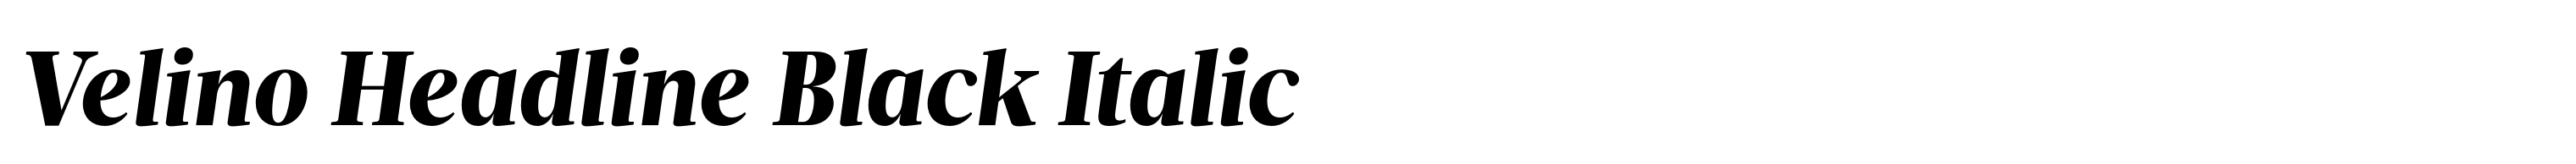 Velino Headline Black Italic